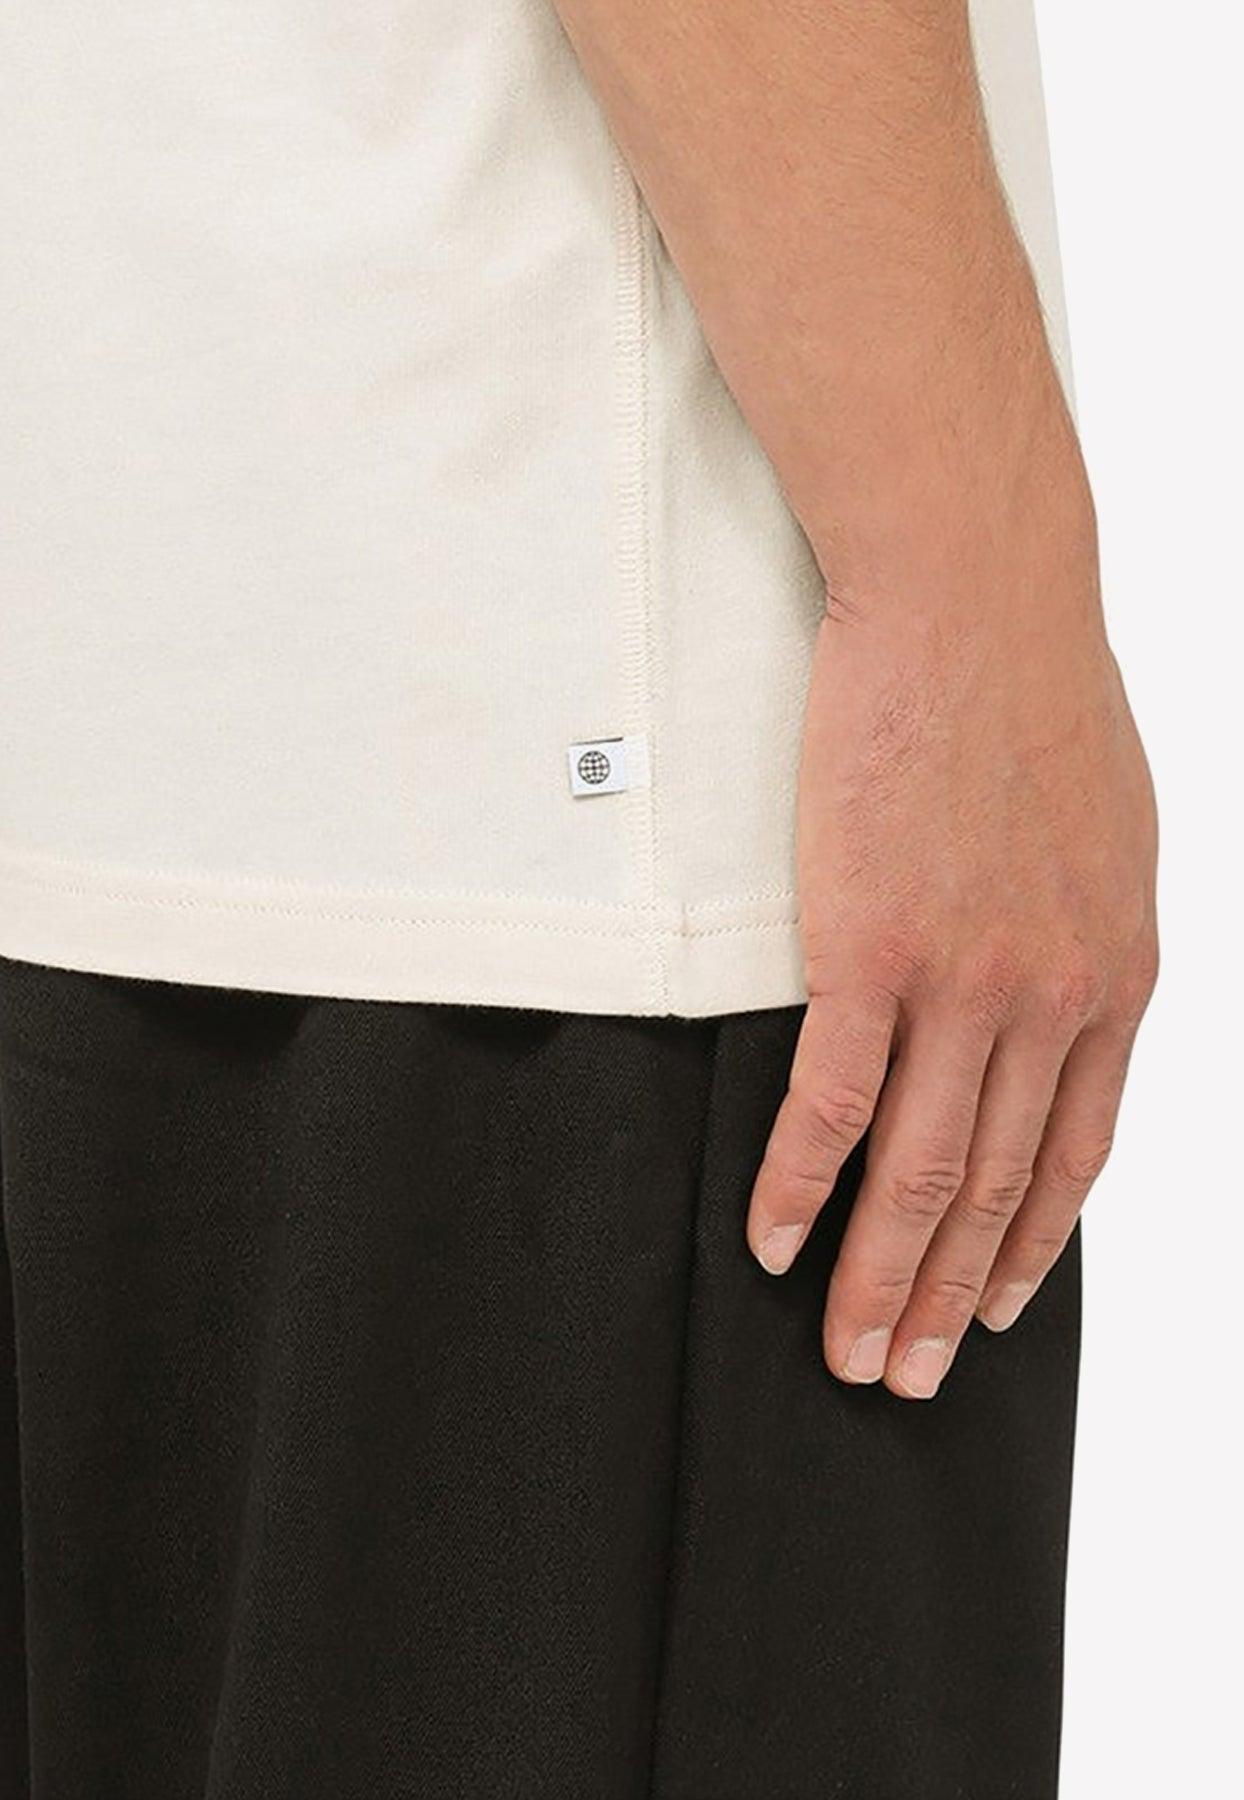 Adicolor White for Logo | in Originals Contempo adidas Men Lyst T-shirt